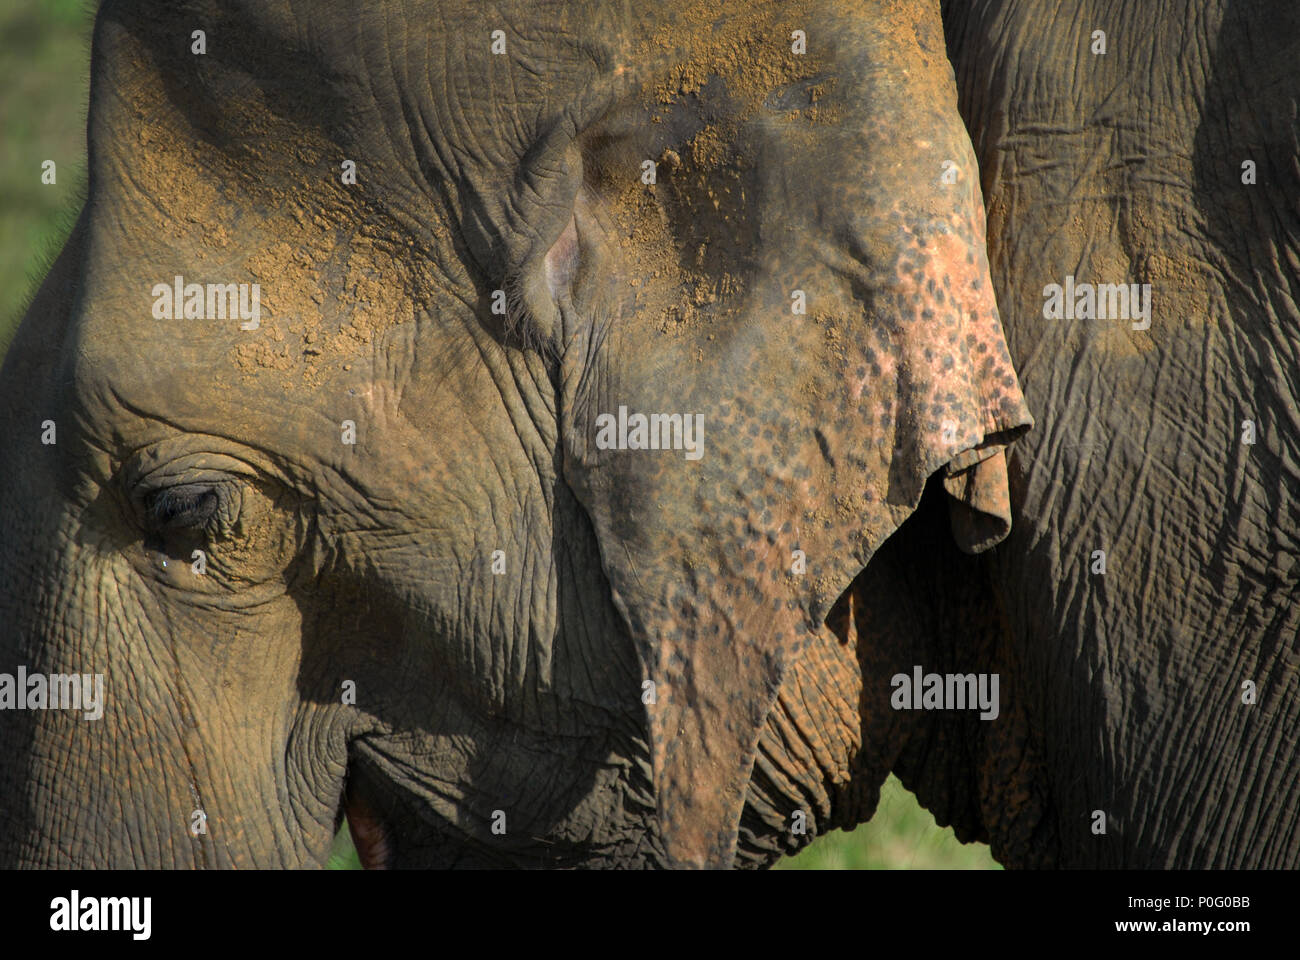 Des éléphants au Parc National de Kaudulla, Sri Lanka. Banque D'Images